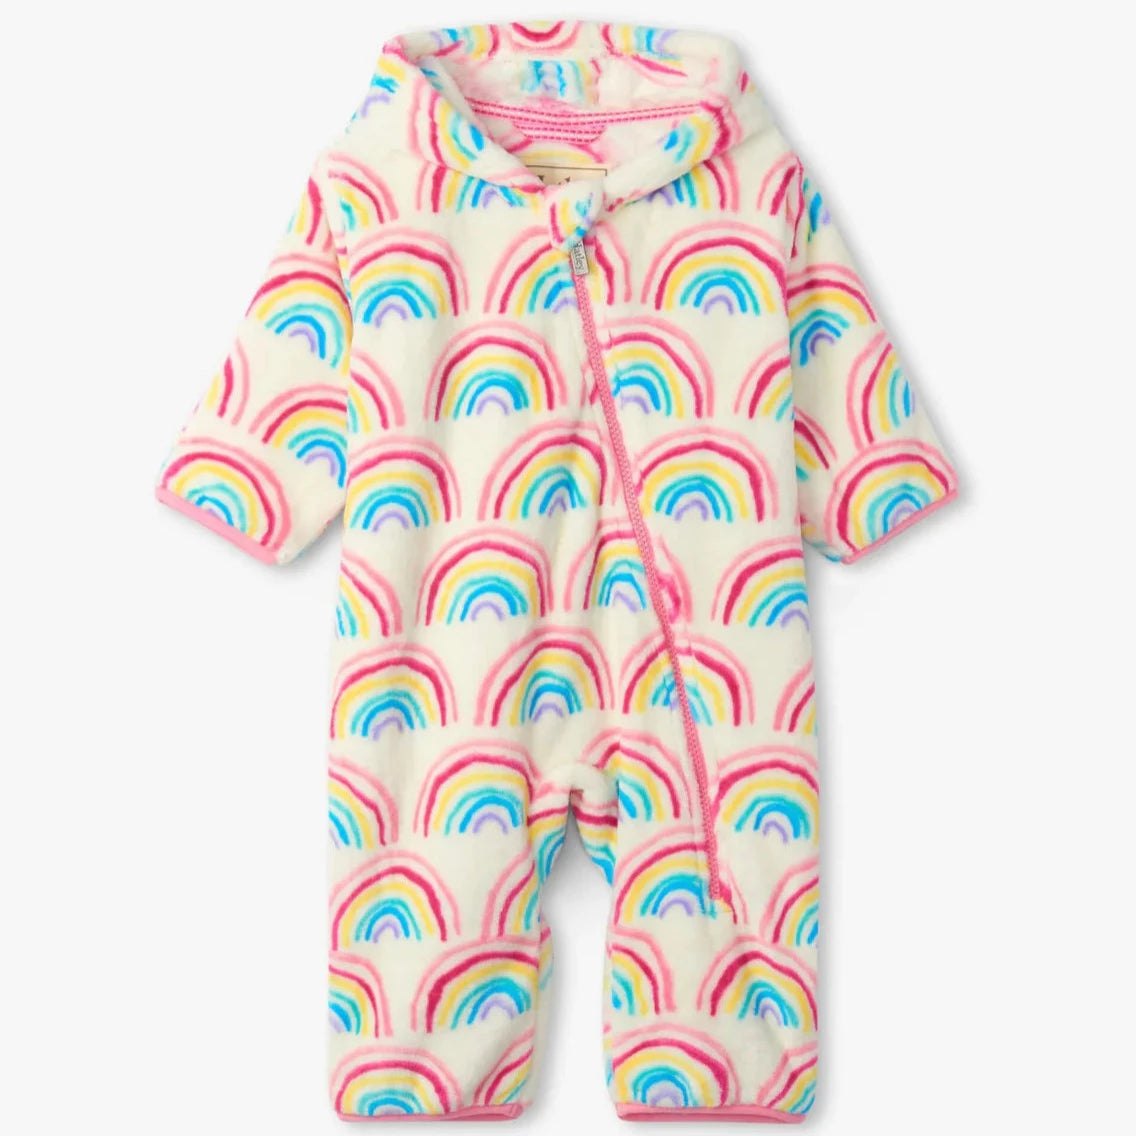 Fuzzy Fleece Baby Bundler - Pretty Rainbows